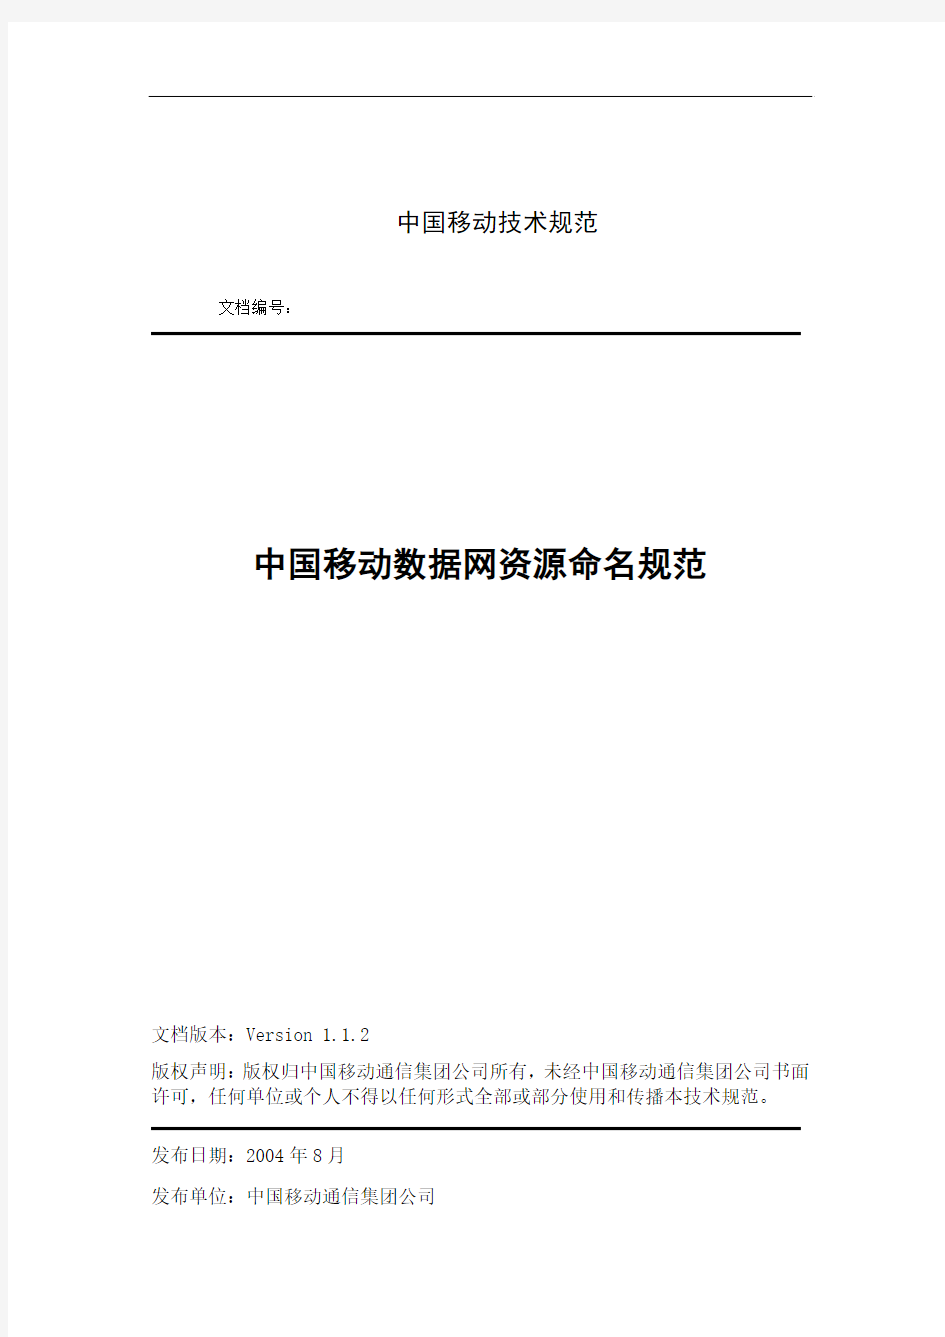 中国移动数据网资源命名规范(V1.1.2)